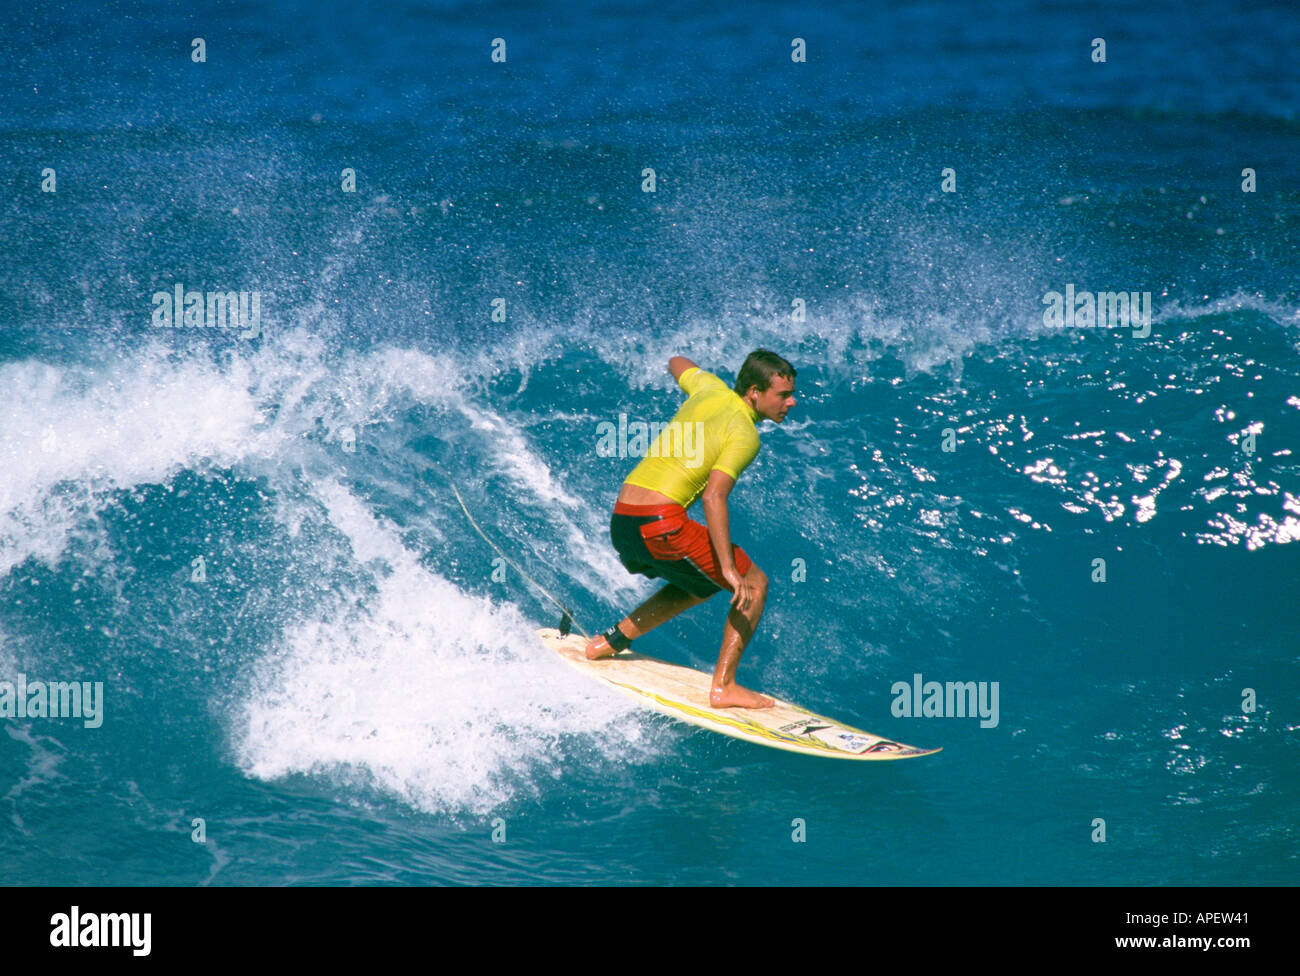 Surfer auf der Welle, Geschwindigkeit und Konzentration, Gabe Davies, Hawaii, USA Stockfoto